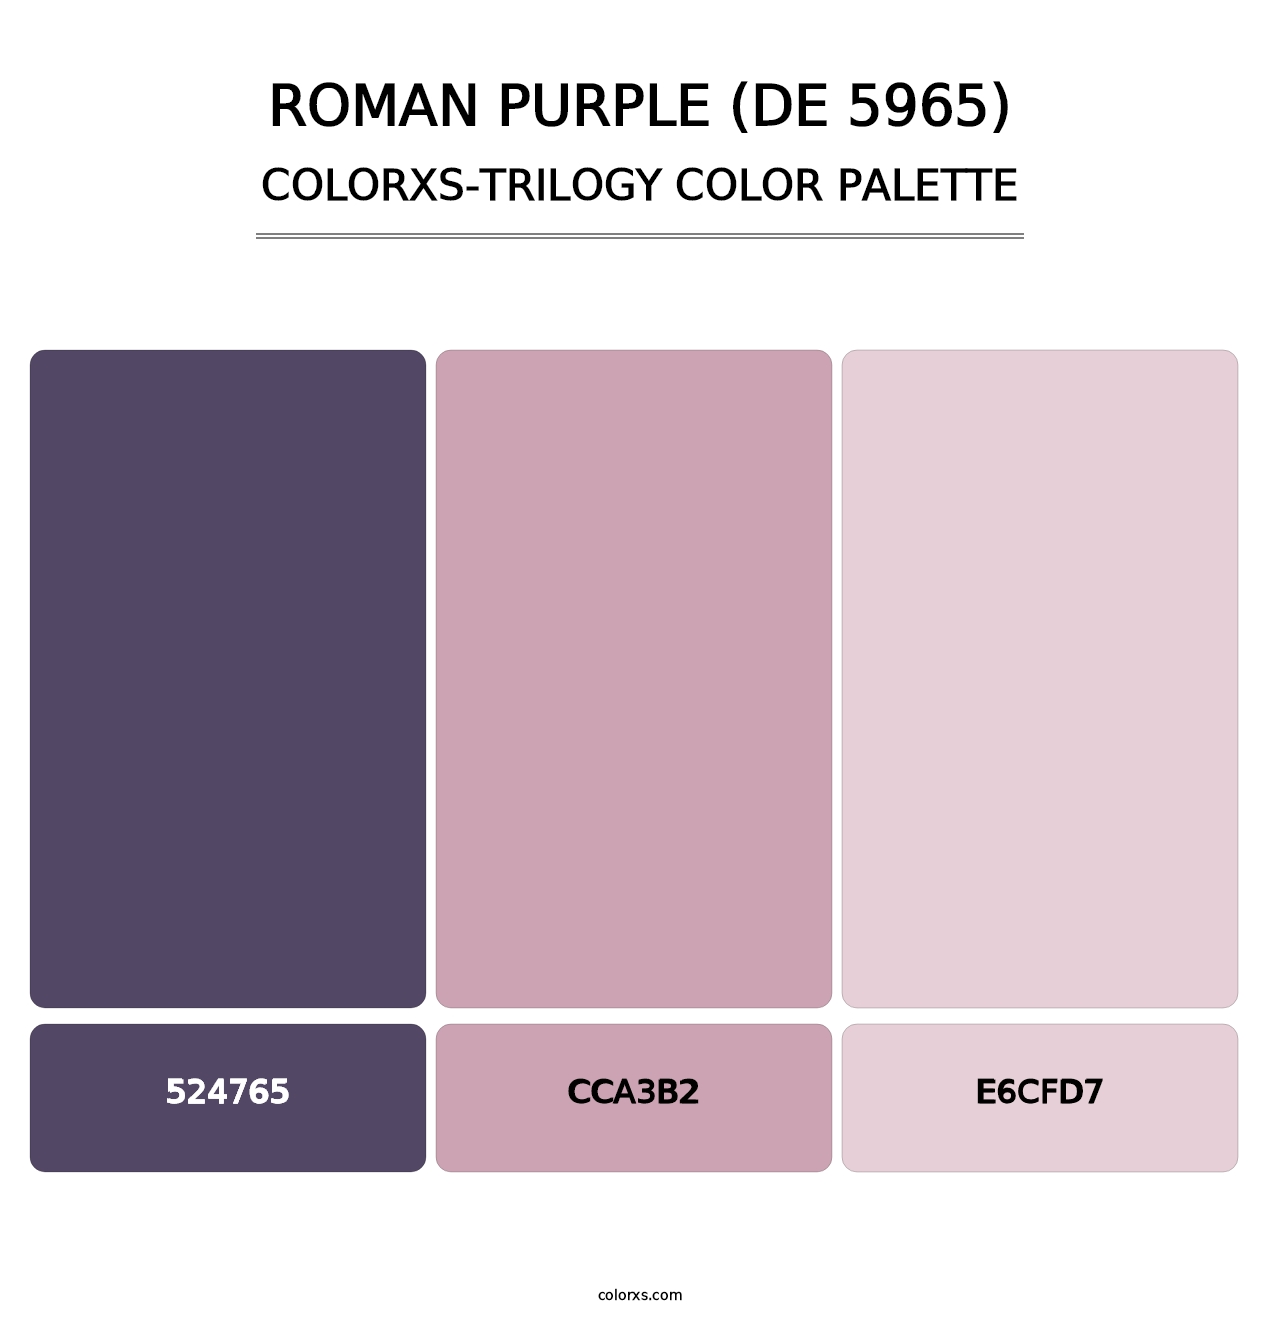 Roman Purple (DE 5965) - Colorxs Trilogy Palette